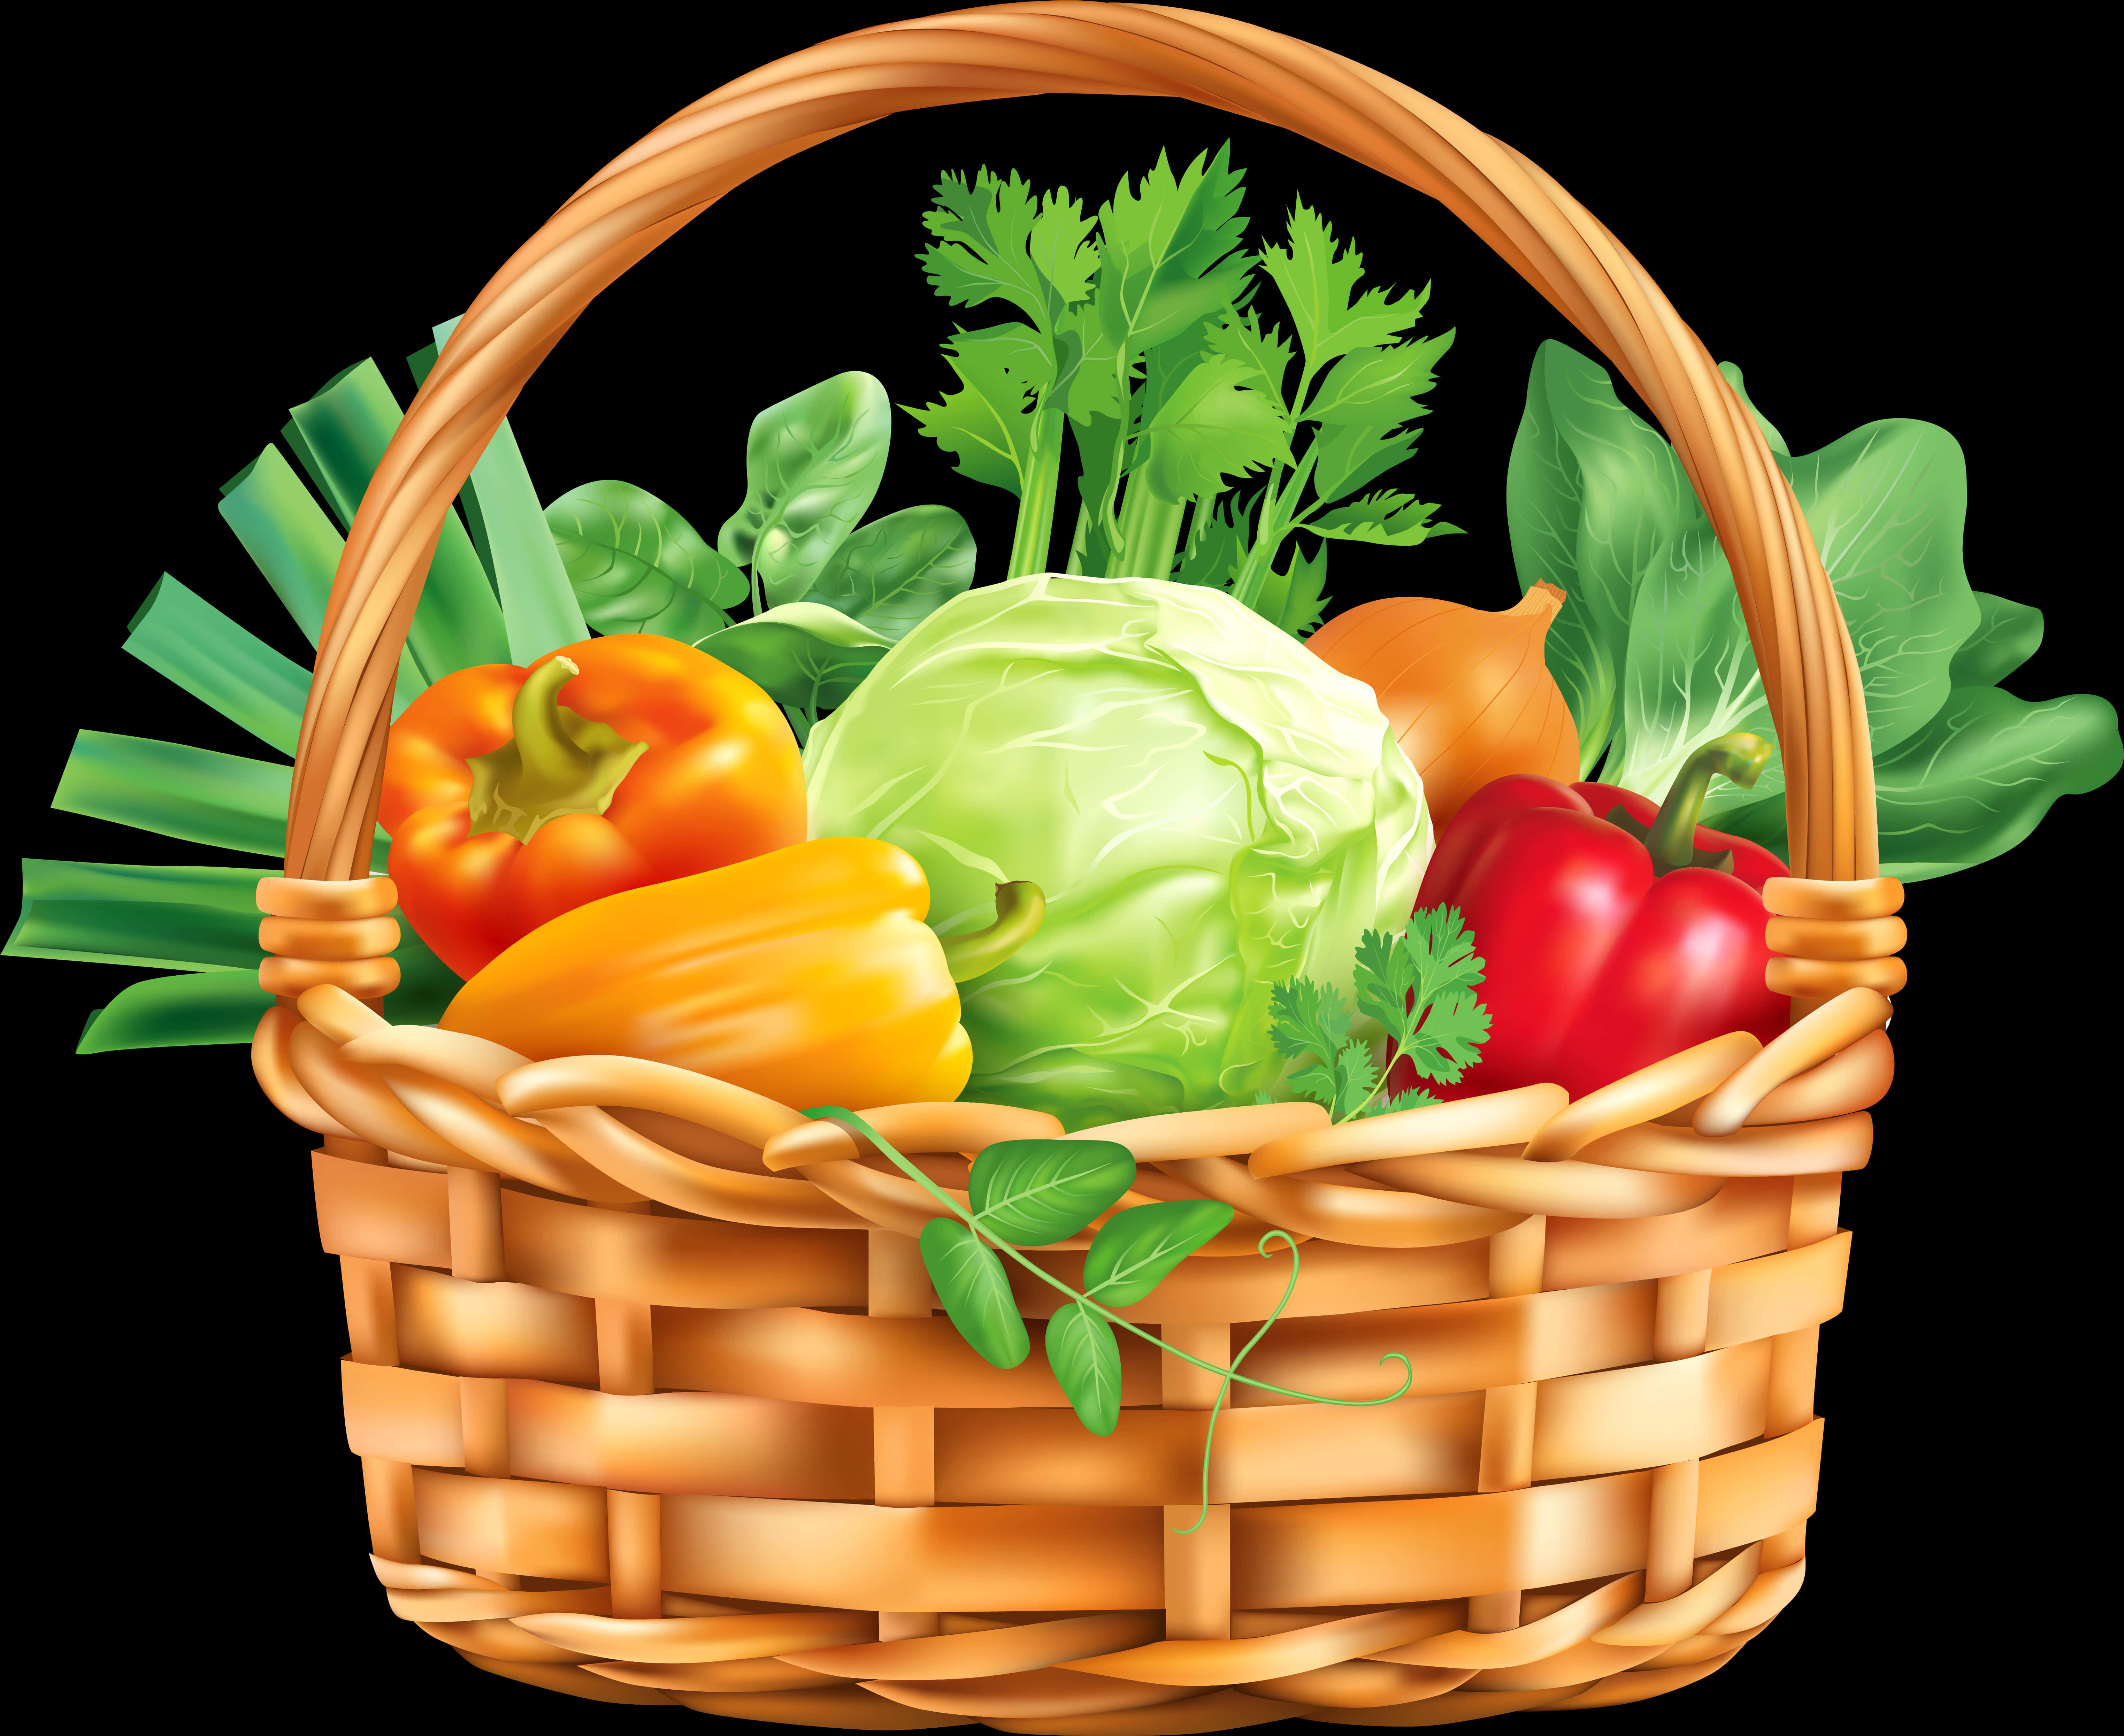 A Basket Of Vegetables